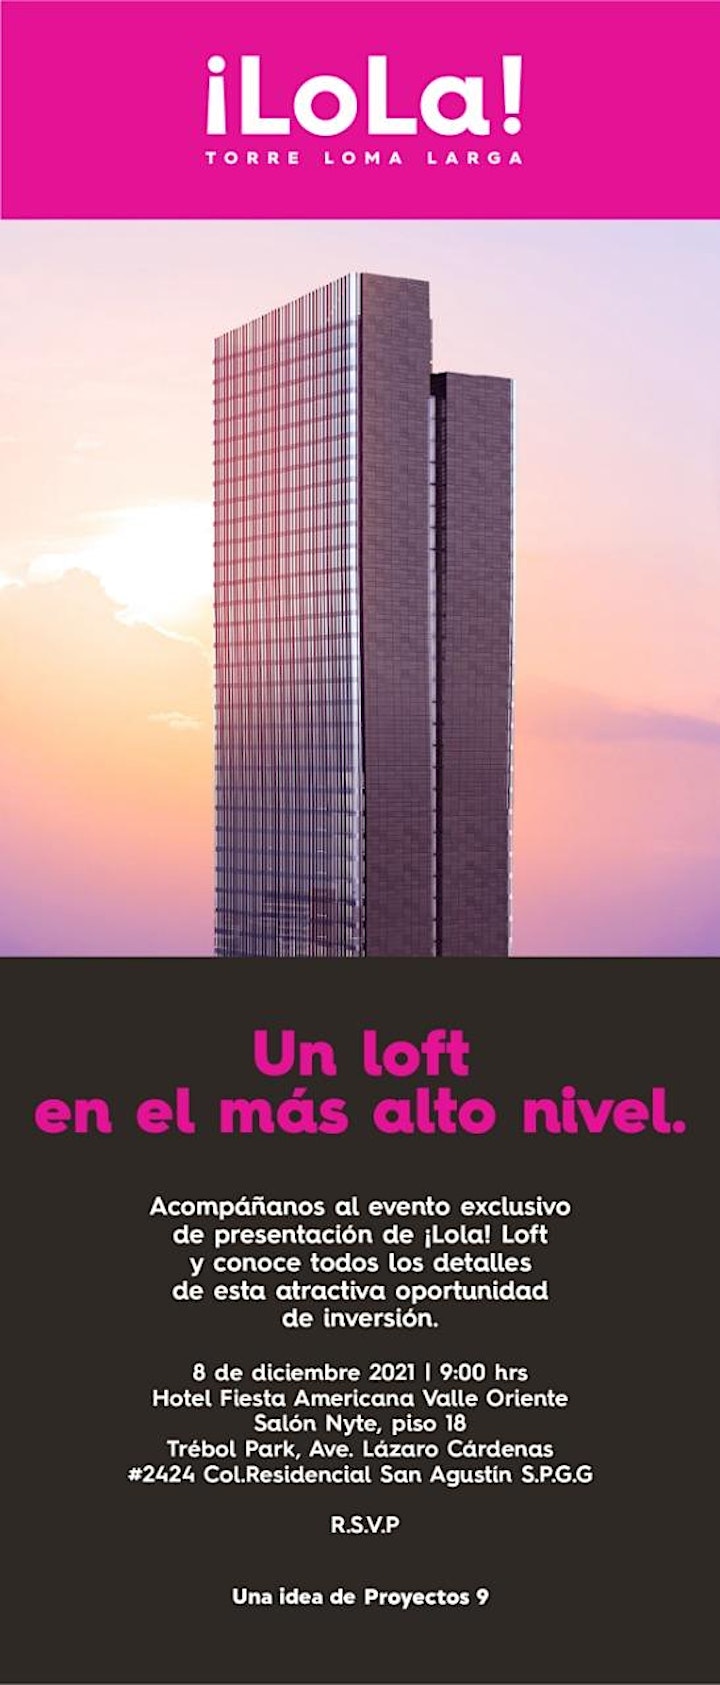 
		Imagen de Desayuno presentacion Torre LOLA !!
